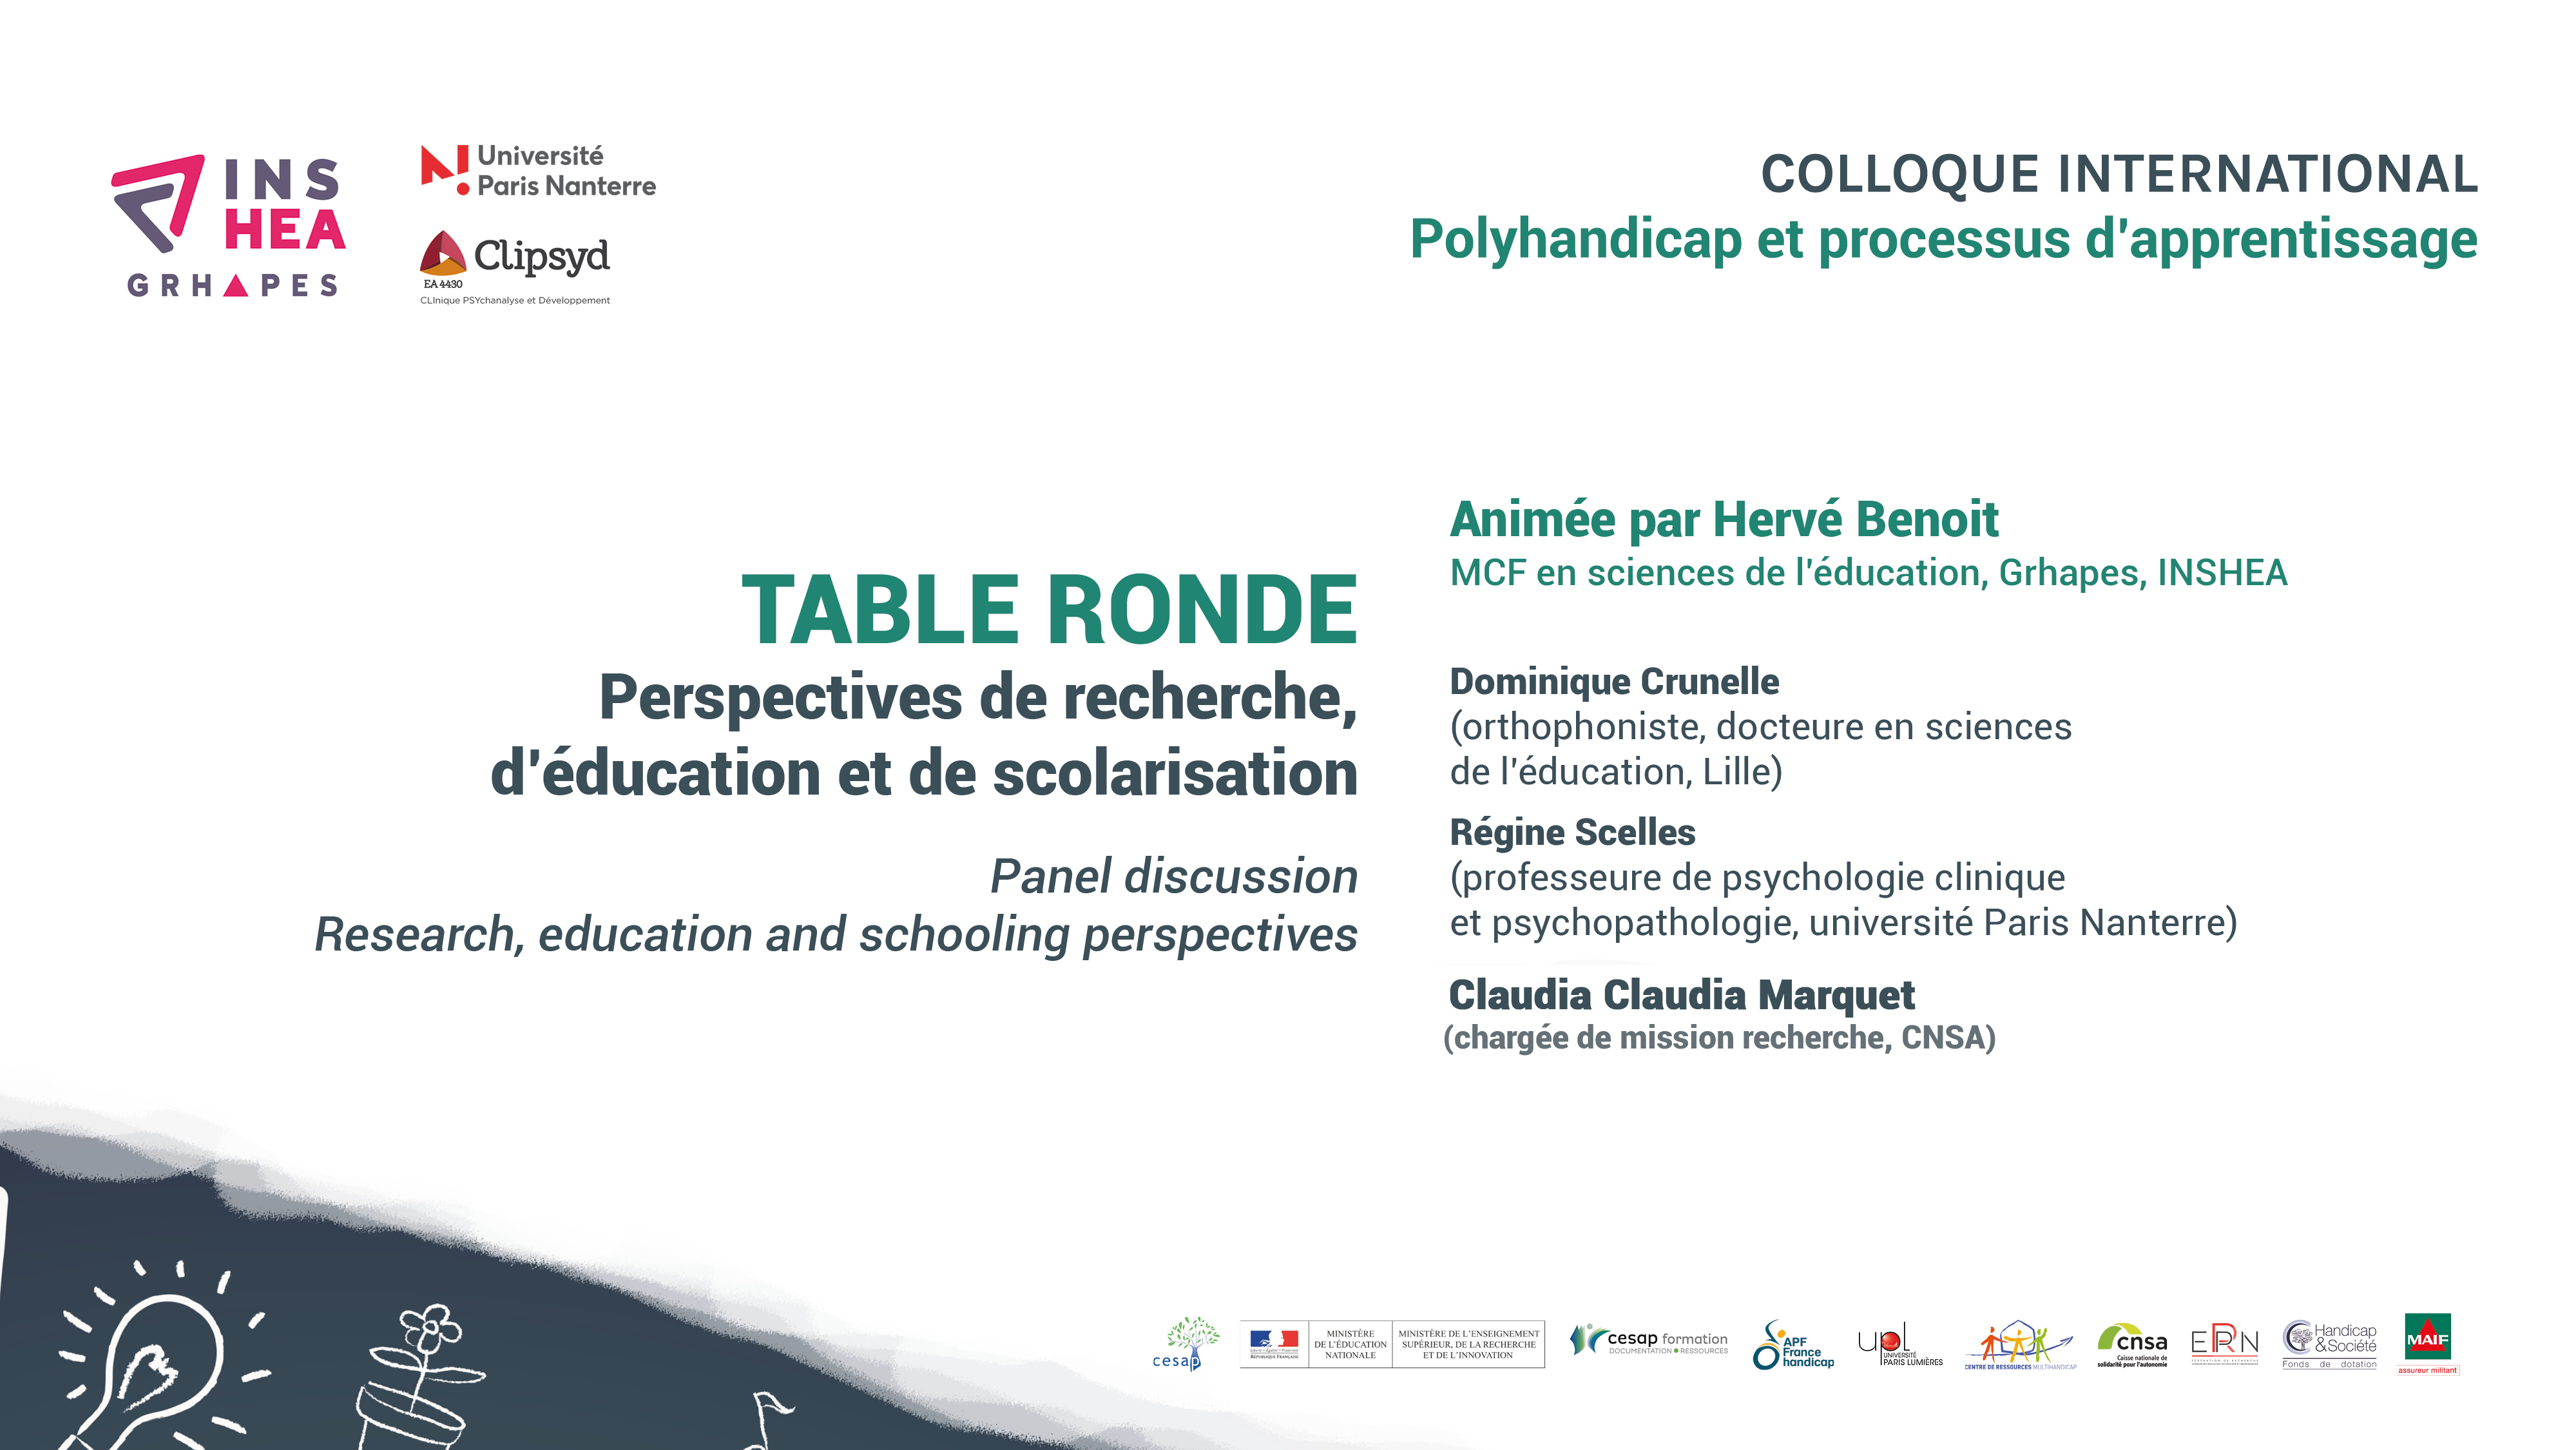 Colloque POLYHANDICAP Table ronde : Claudia Marquet - Régine Scelles - Dominique Crunelle
« Perspectives de recherche, d’éducation et de scolarisation »